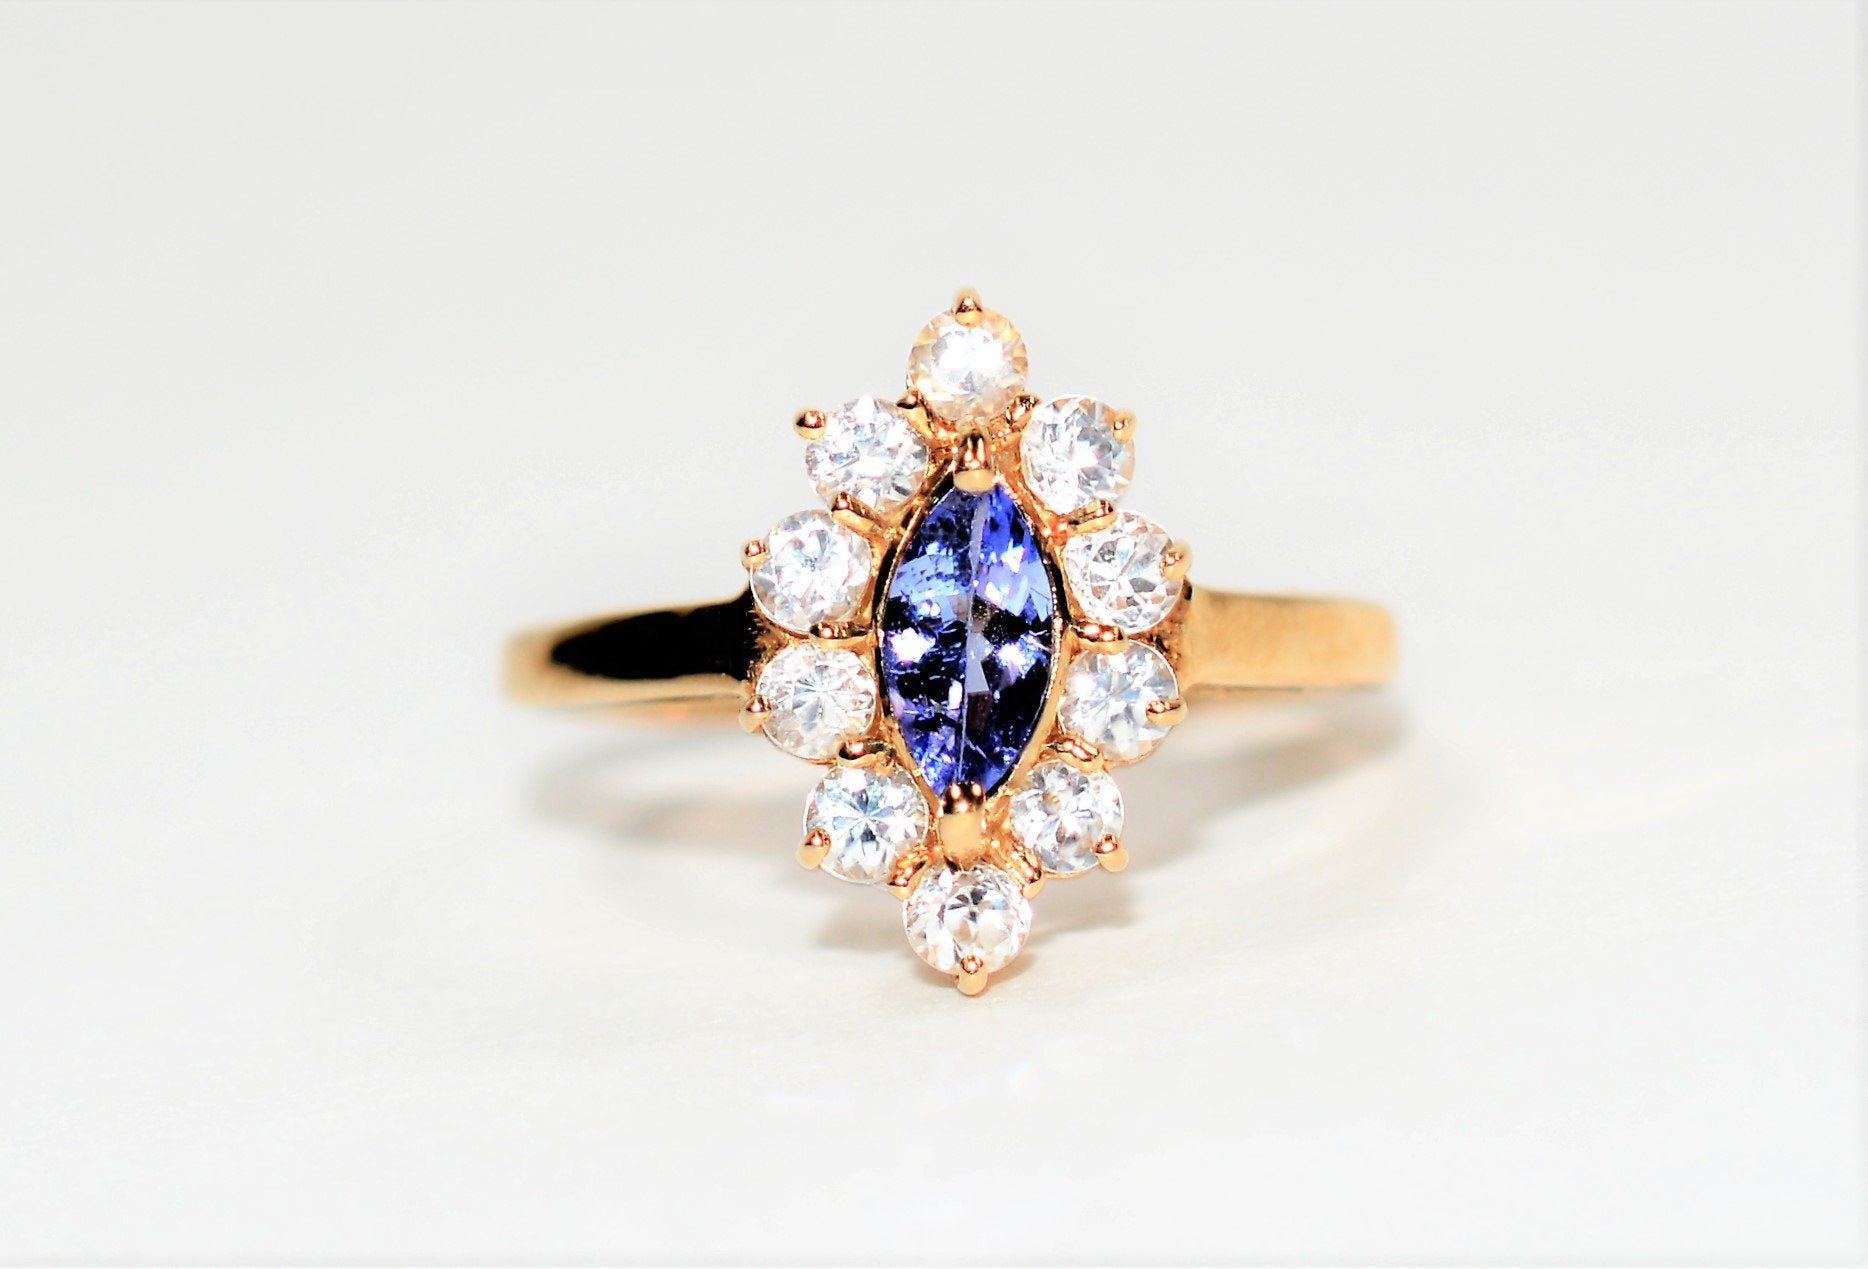 Natural Tanzanite & Diamond Ring 10K Solid Gold 1.10tcw December Birthstone Ring Marquise Ring Gemstone Ring Women's Ring Ladies Ring Estate